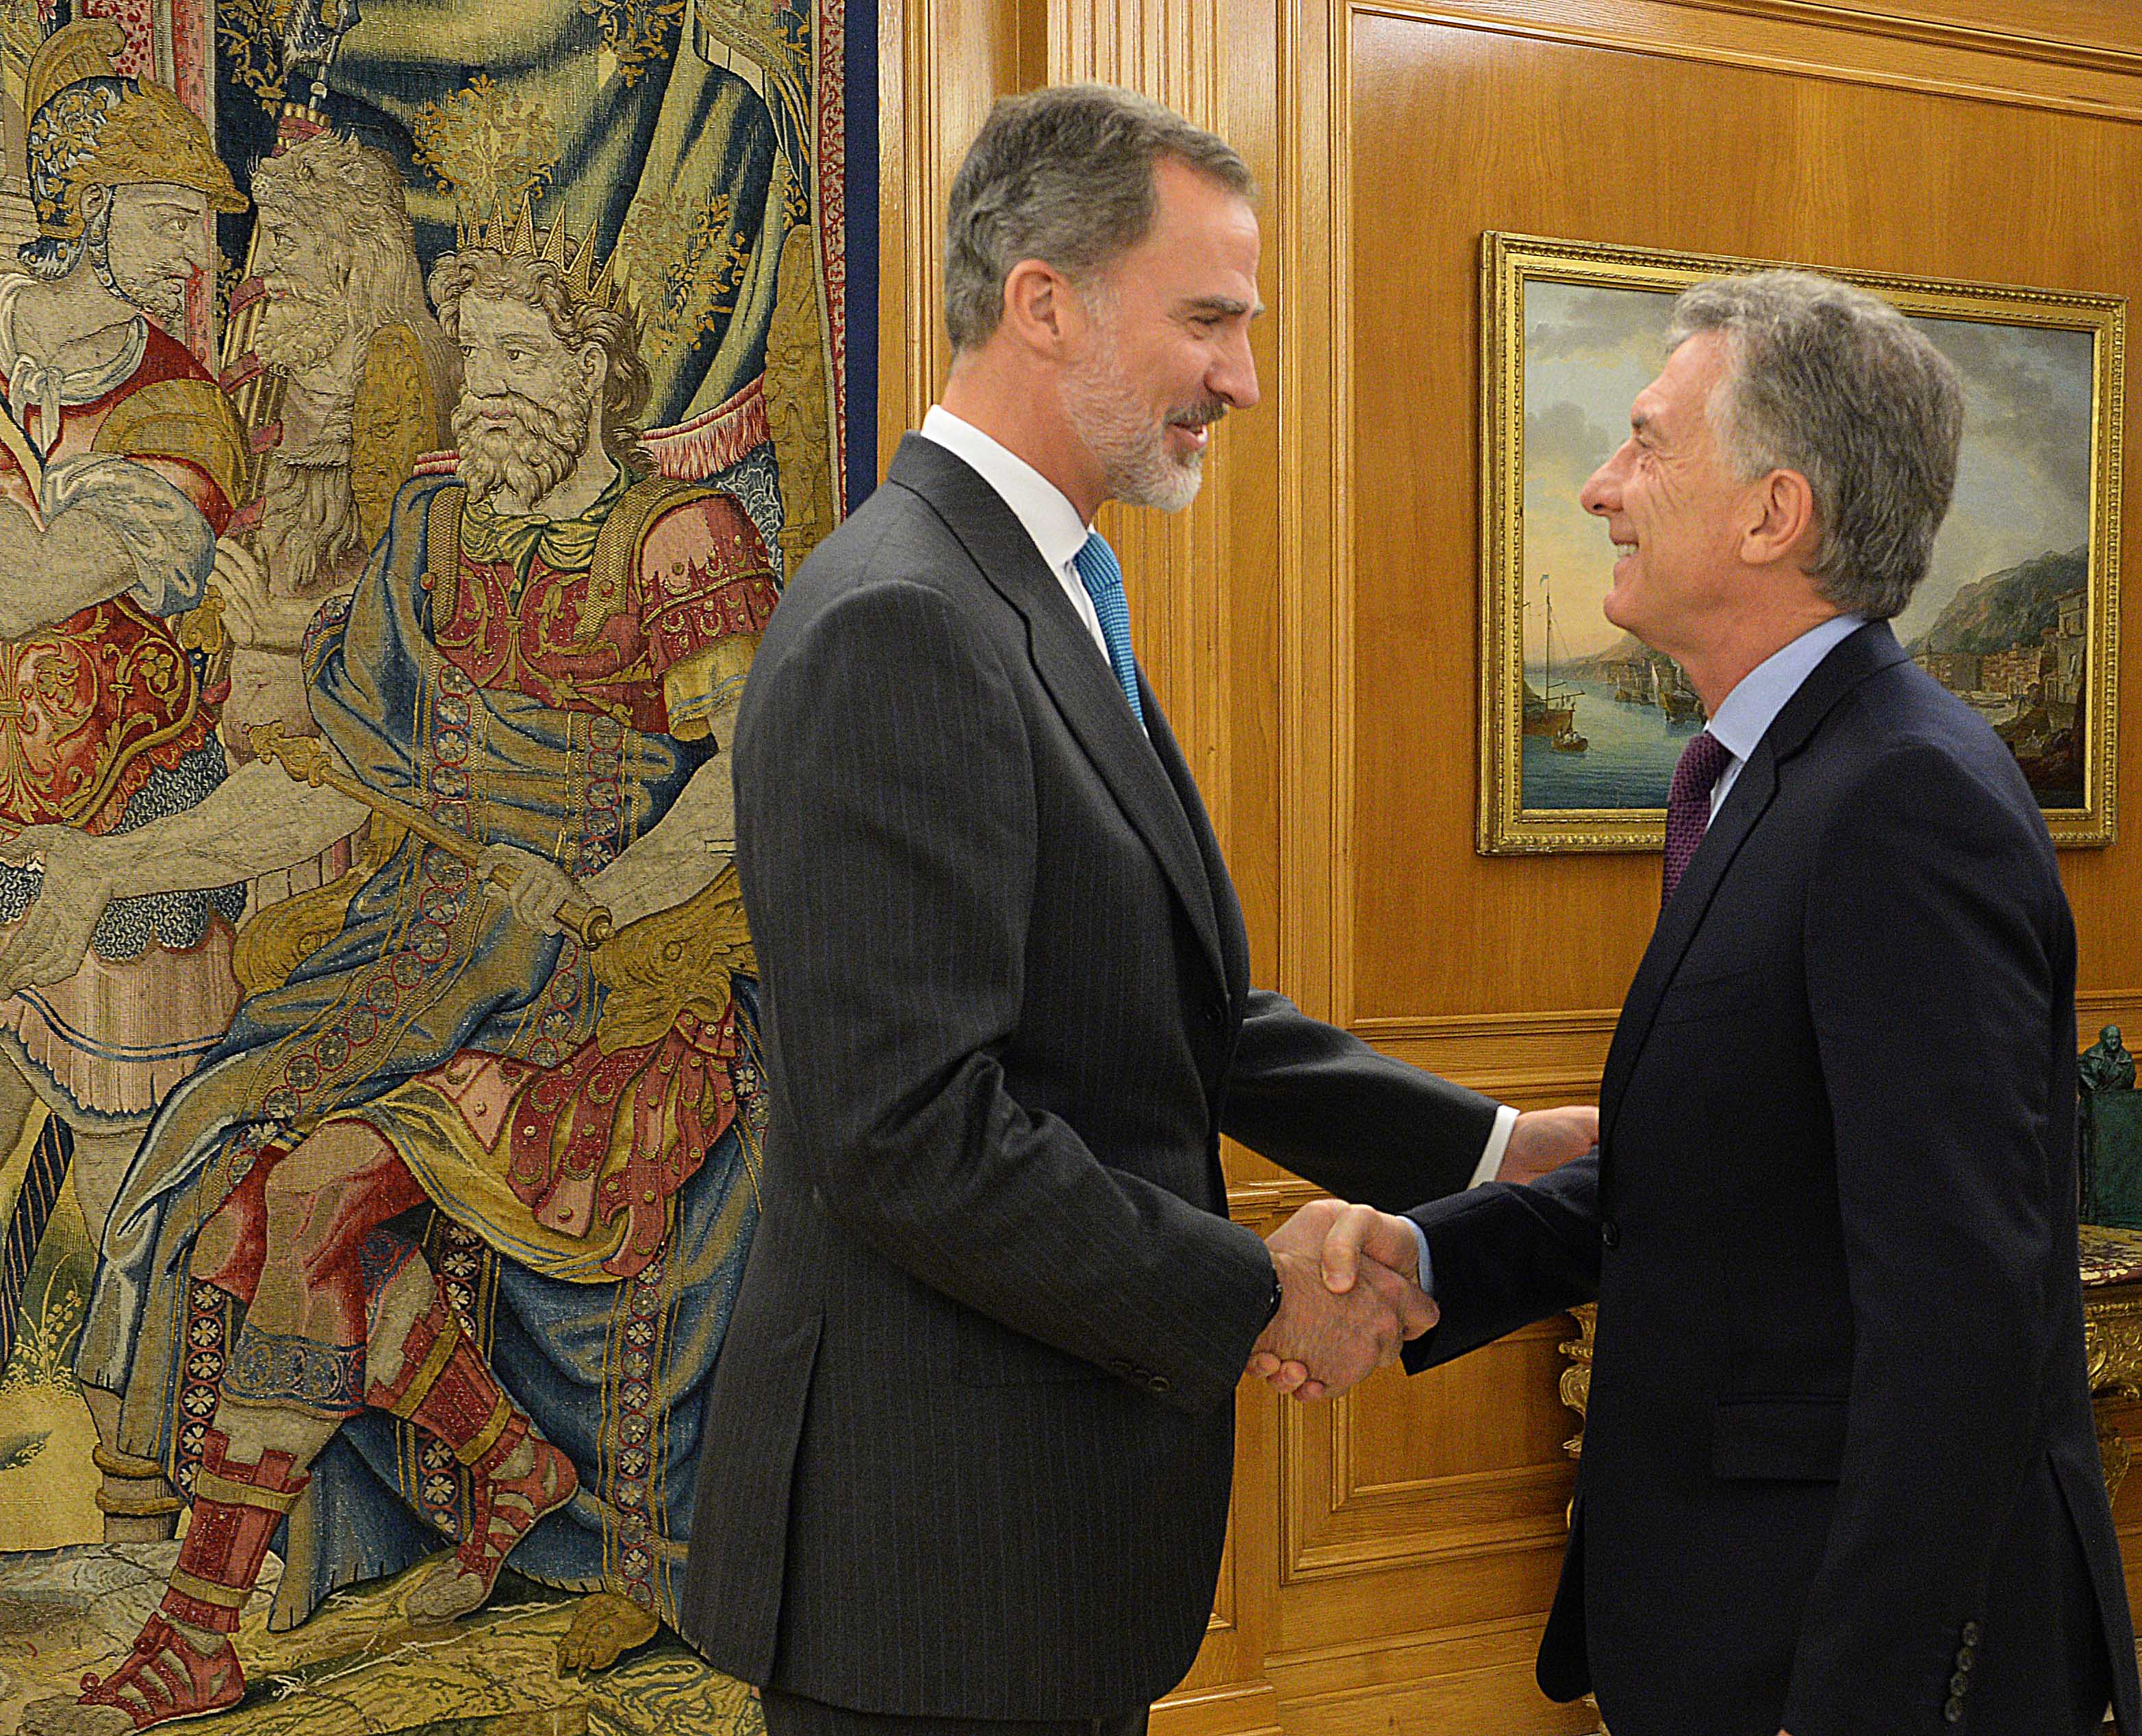 El Presidente Macri fue recibido por el rey Felipe VI de España, en el Palacio de la Zarzuela, Madrid.